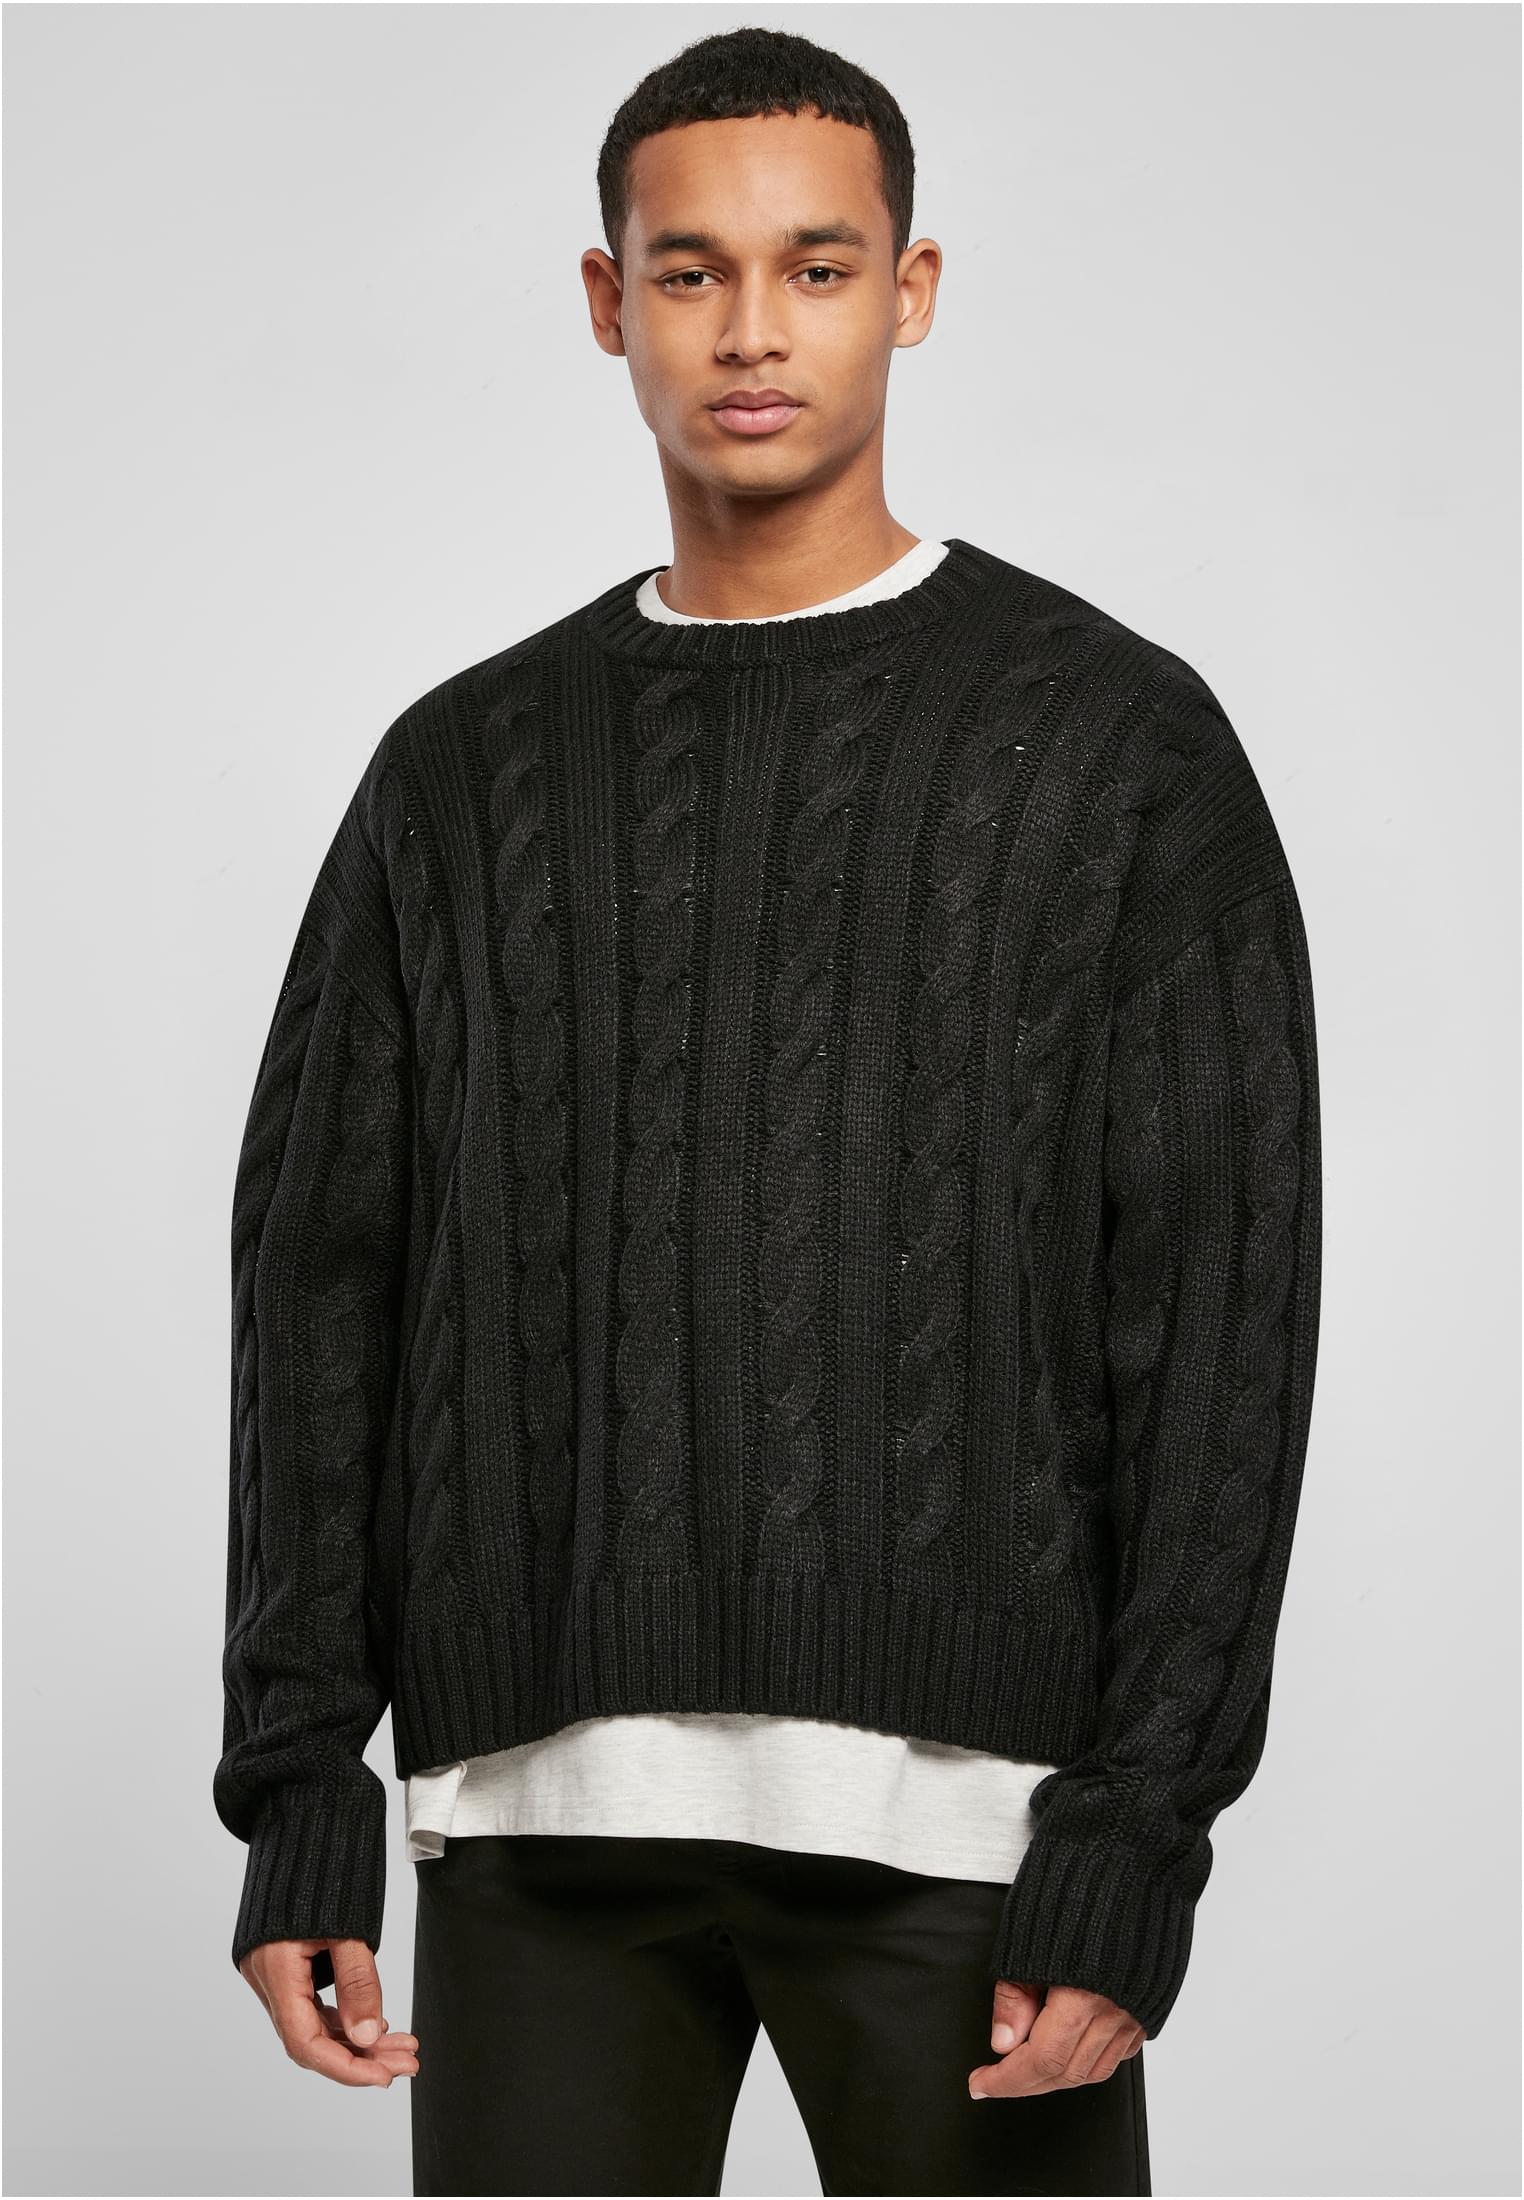 Boxy sweater black